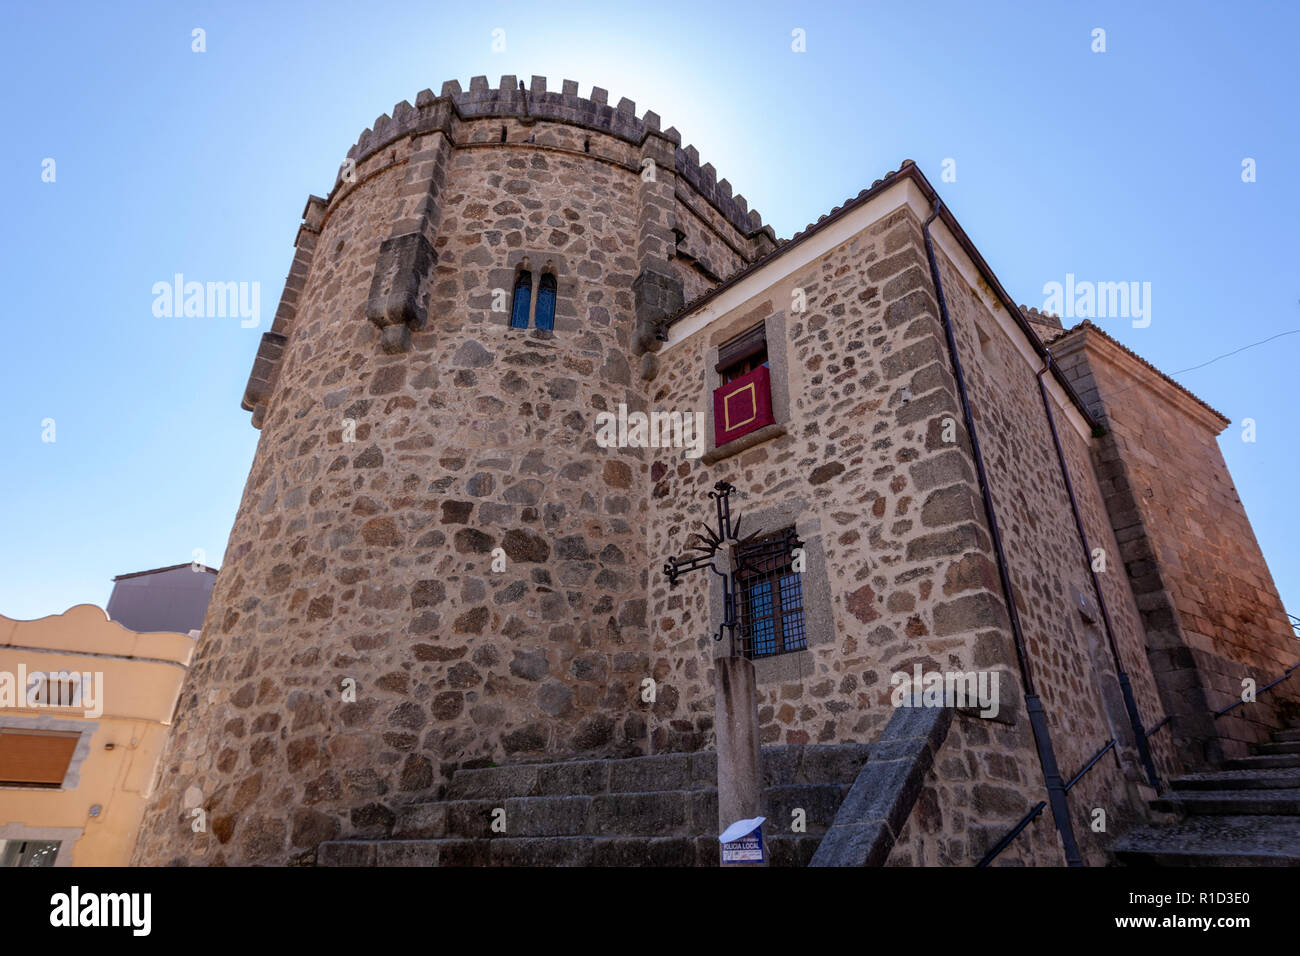 Iglesia Fortaleza de Nuestra Sra. de la Torre, Parador de Jarandilla de la Vera, medieval castle,  Extremadura, Spain Stock Photo